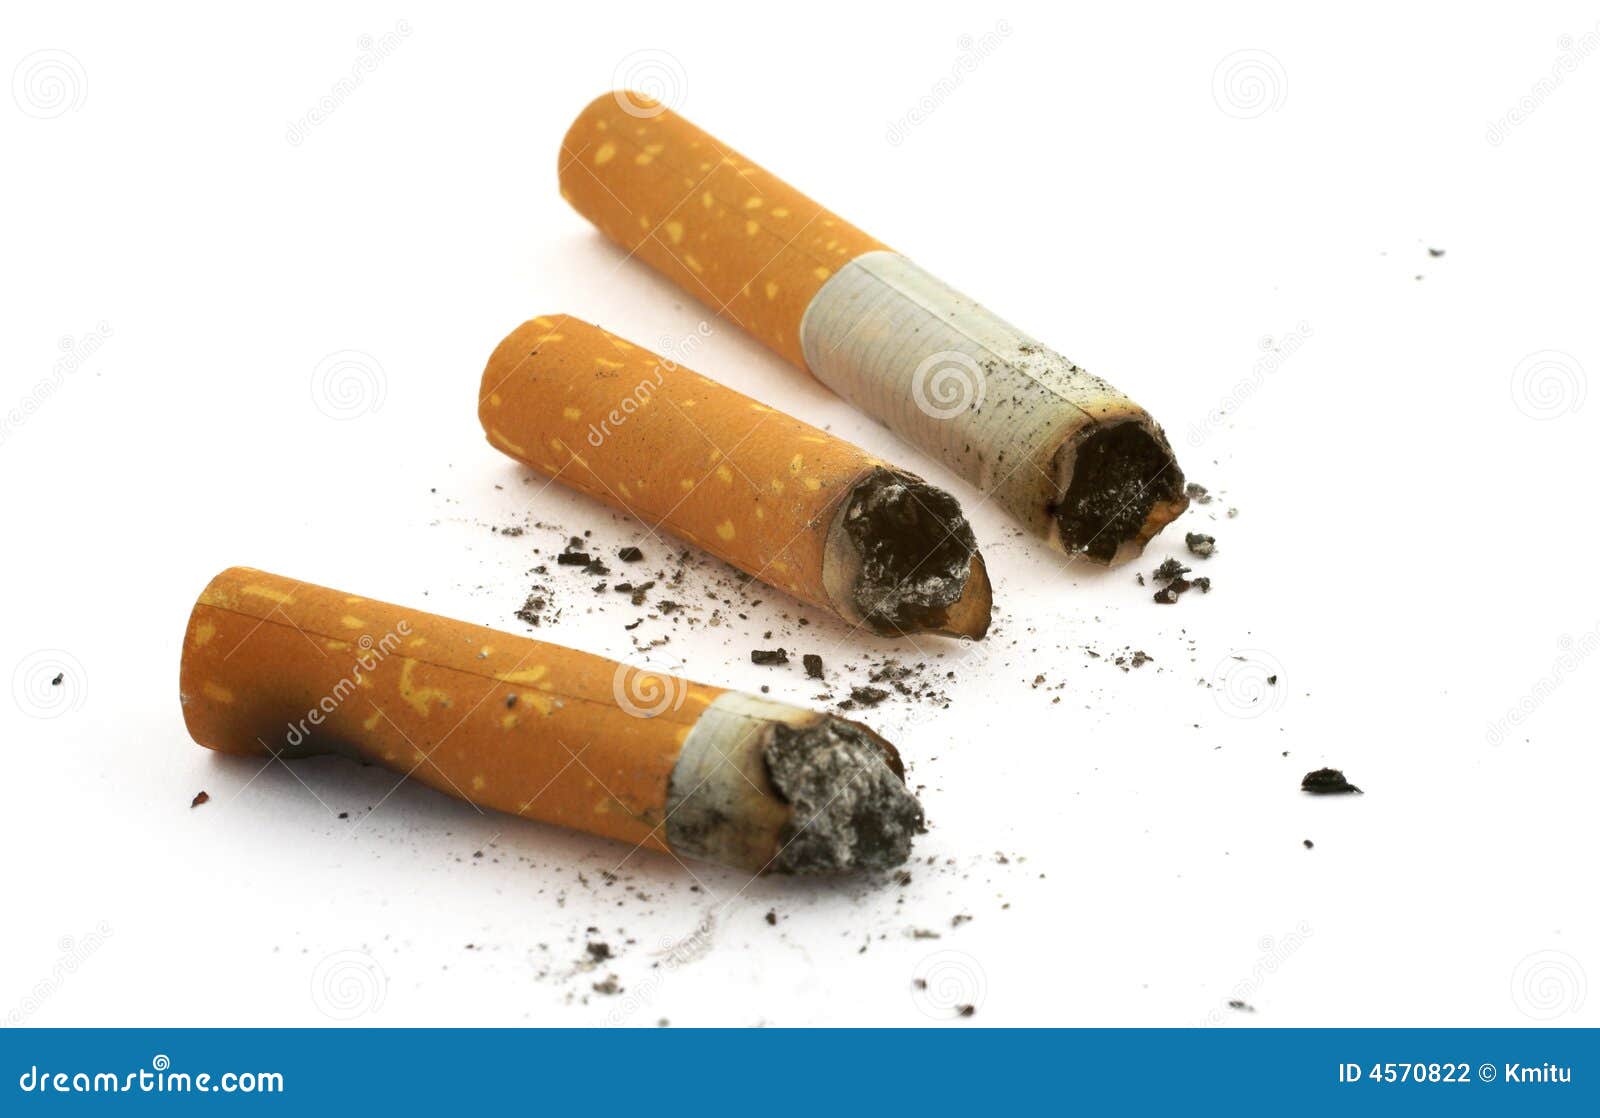 three cigarette butts